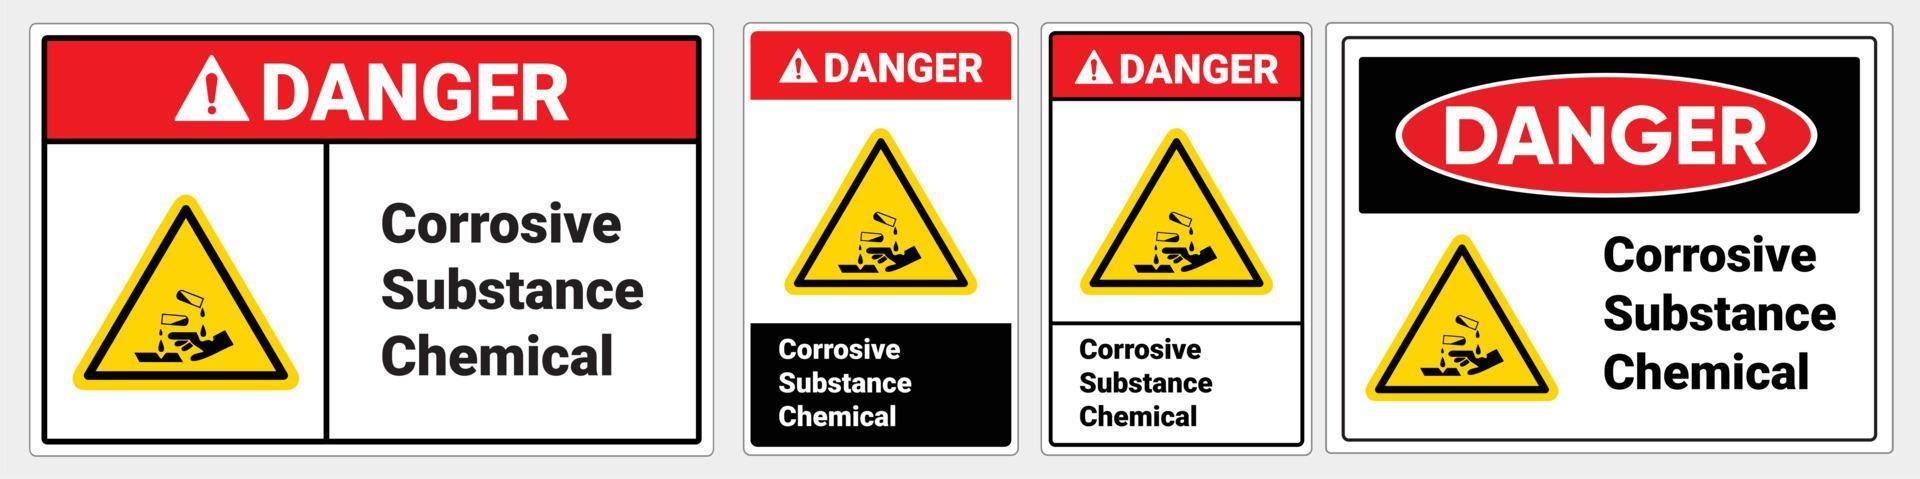 segnale di sicurezza sostanza corrosiva chimica. standard osha e ansi. segnale di pericolo. vettore